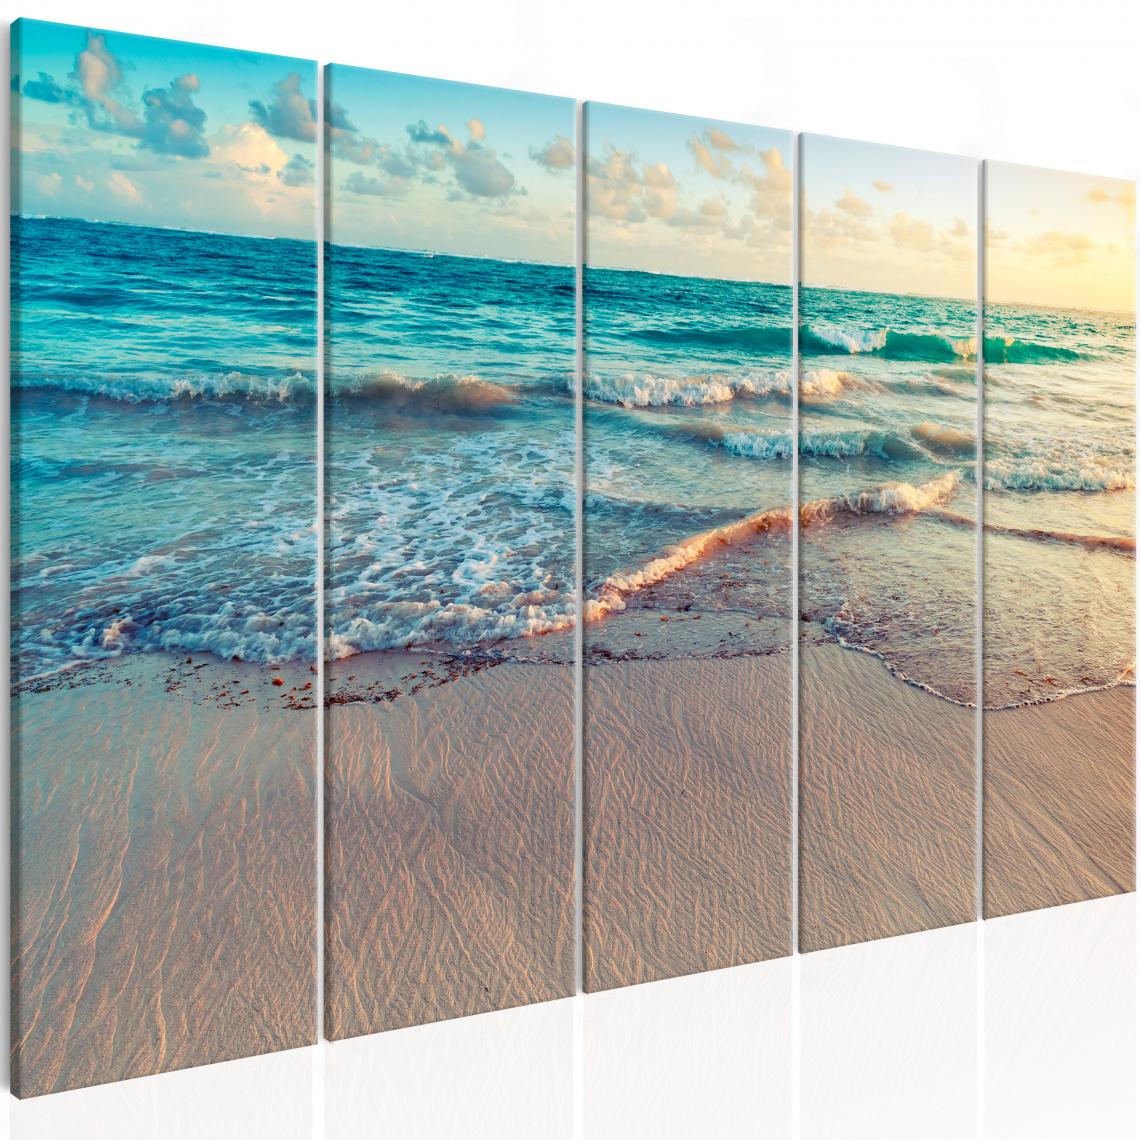 Decoshop26 - Tableau sur toile en 5 panneaux décoration murale image imprimée cadre en bois à suspendre Plage à Punta Cana (5 Parties) Étroite 200x80 cm 11_0006997 - Tableaux, peintures